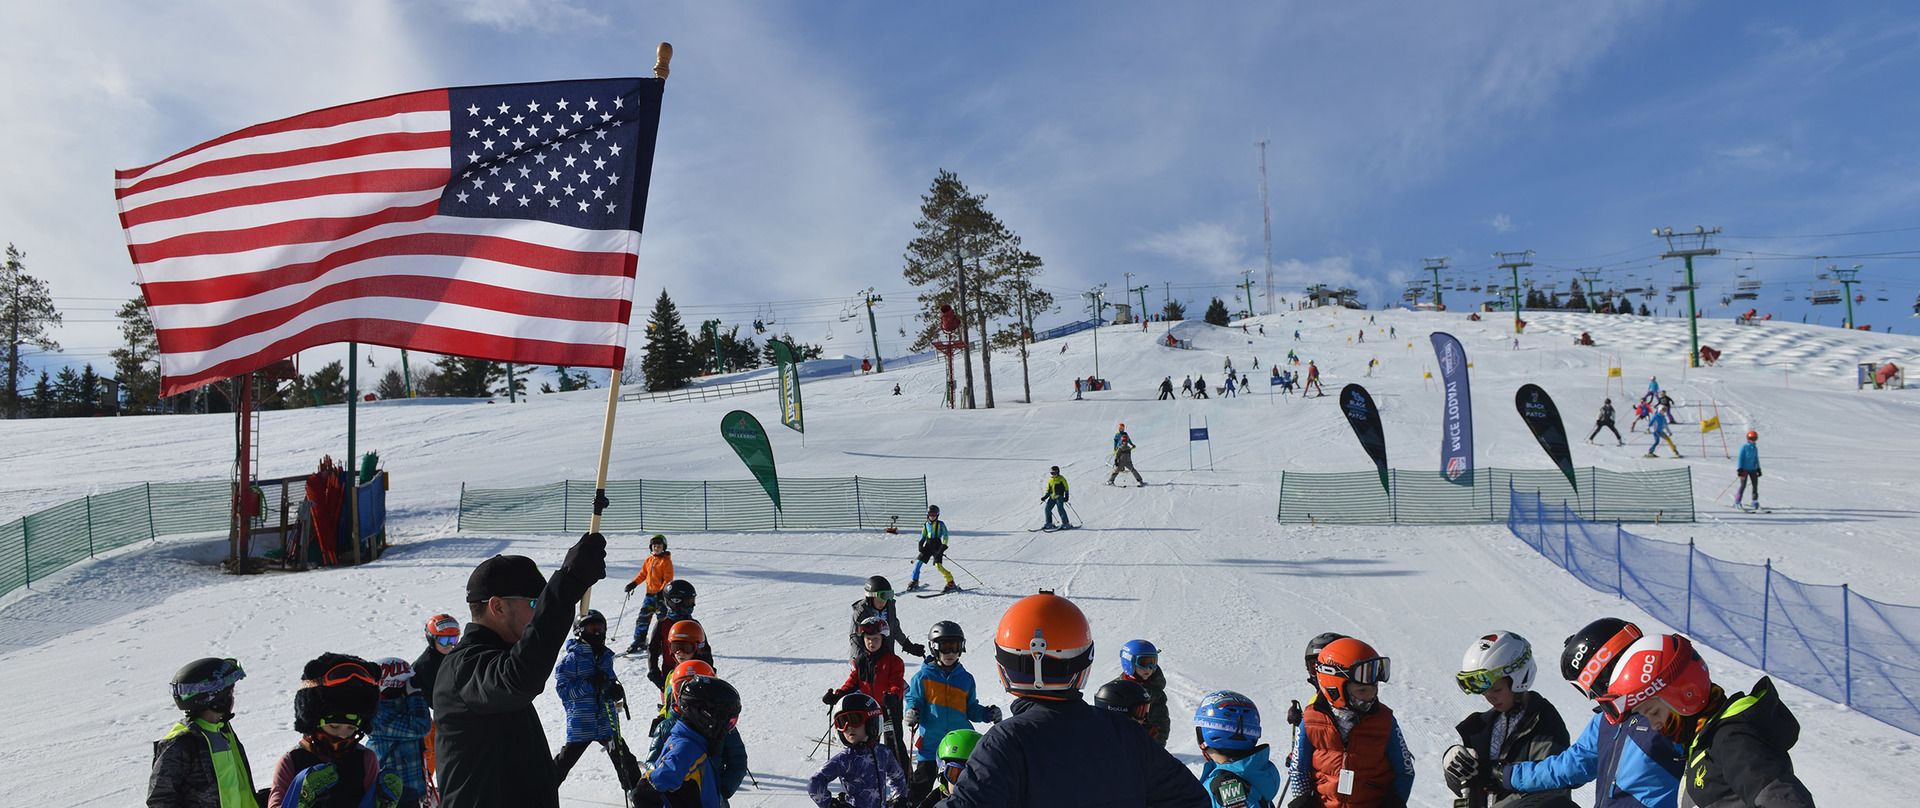 Bandera de los estados unidos en estacion de esqui